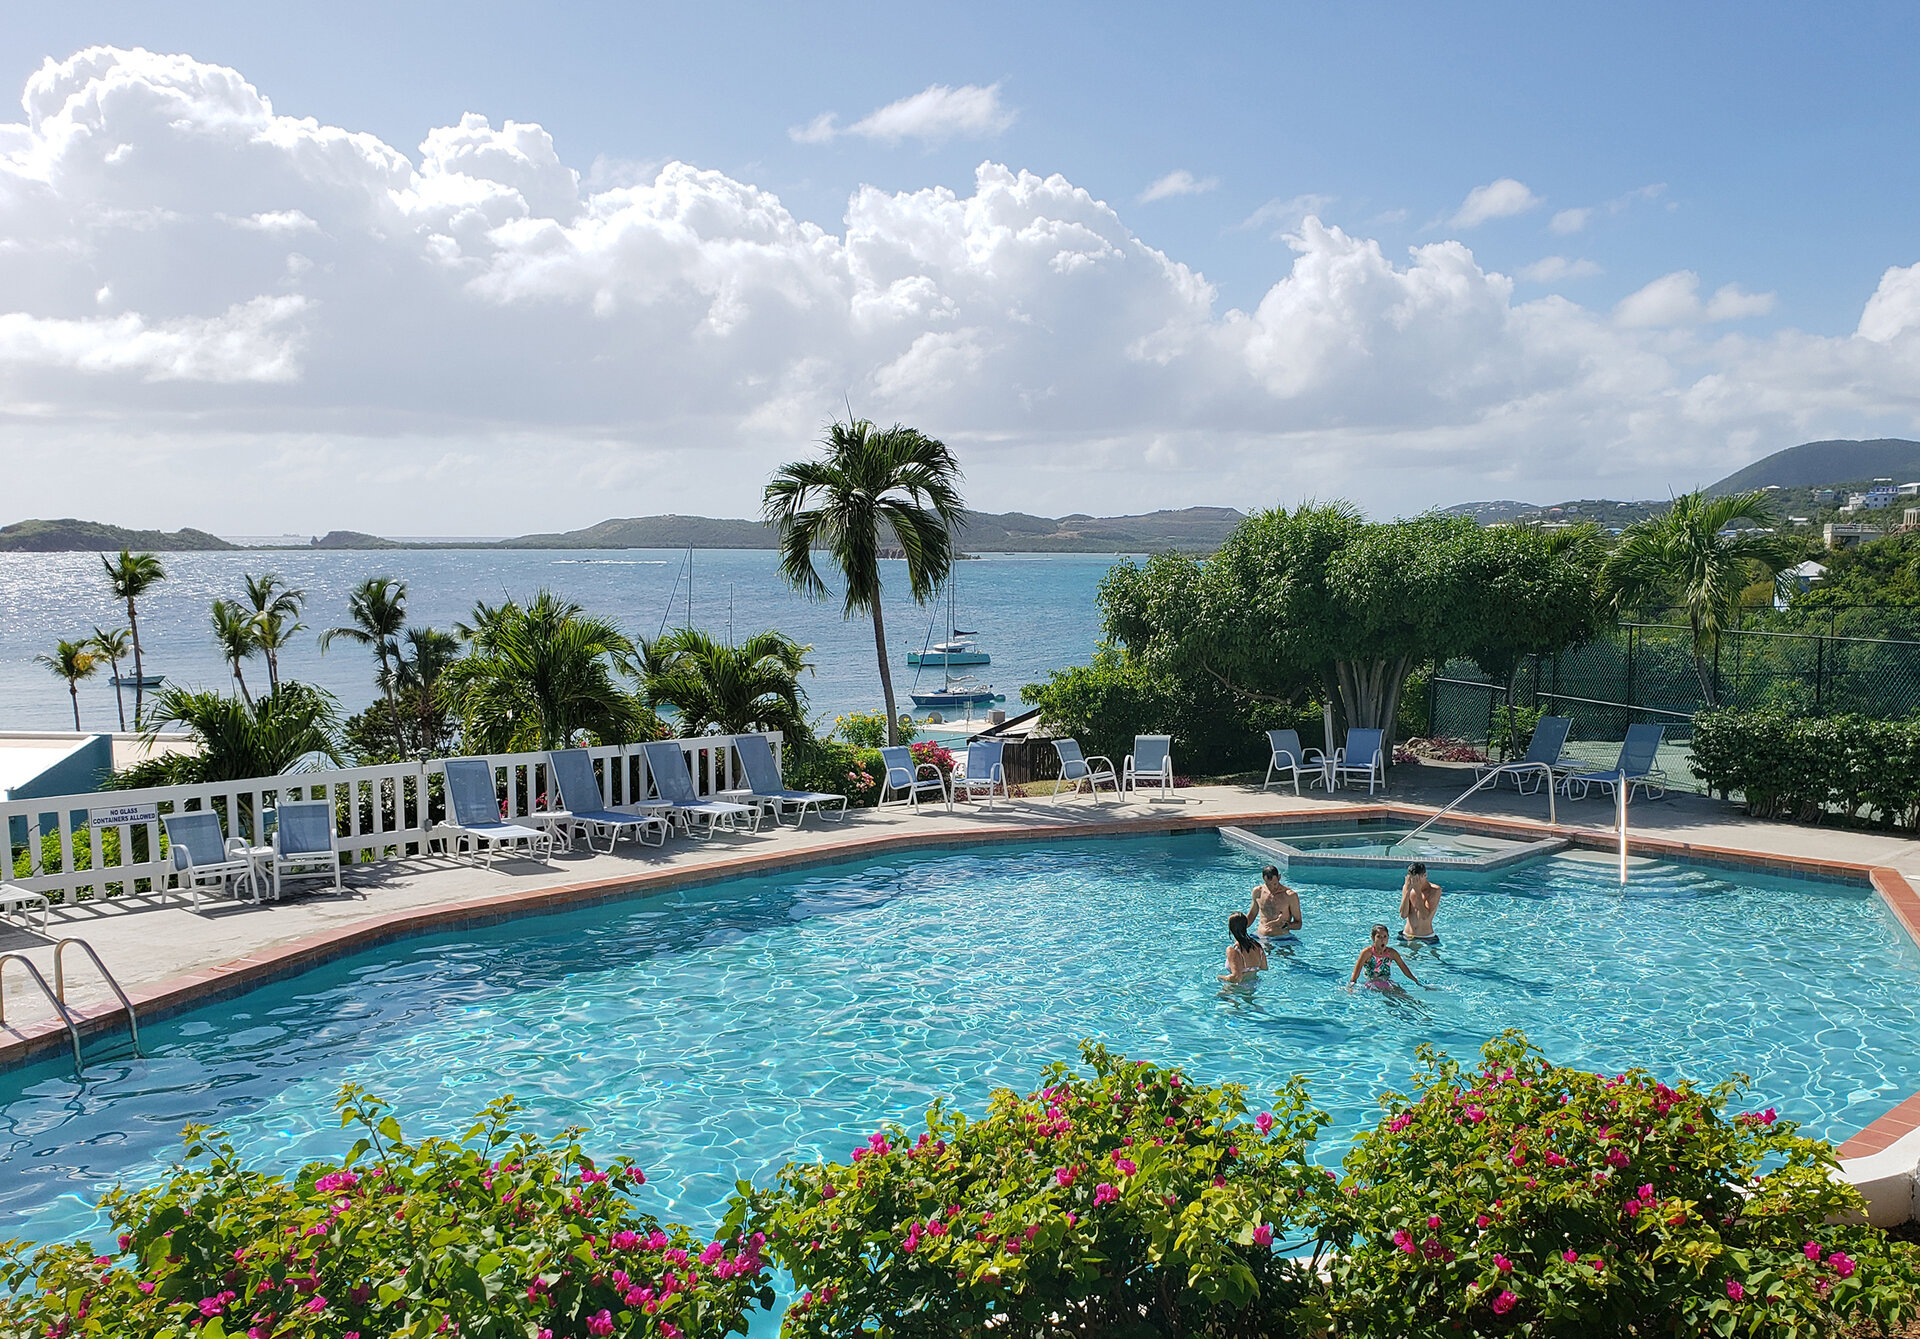 st thomas resort pool overlooking ocean